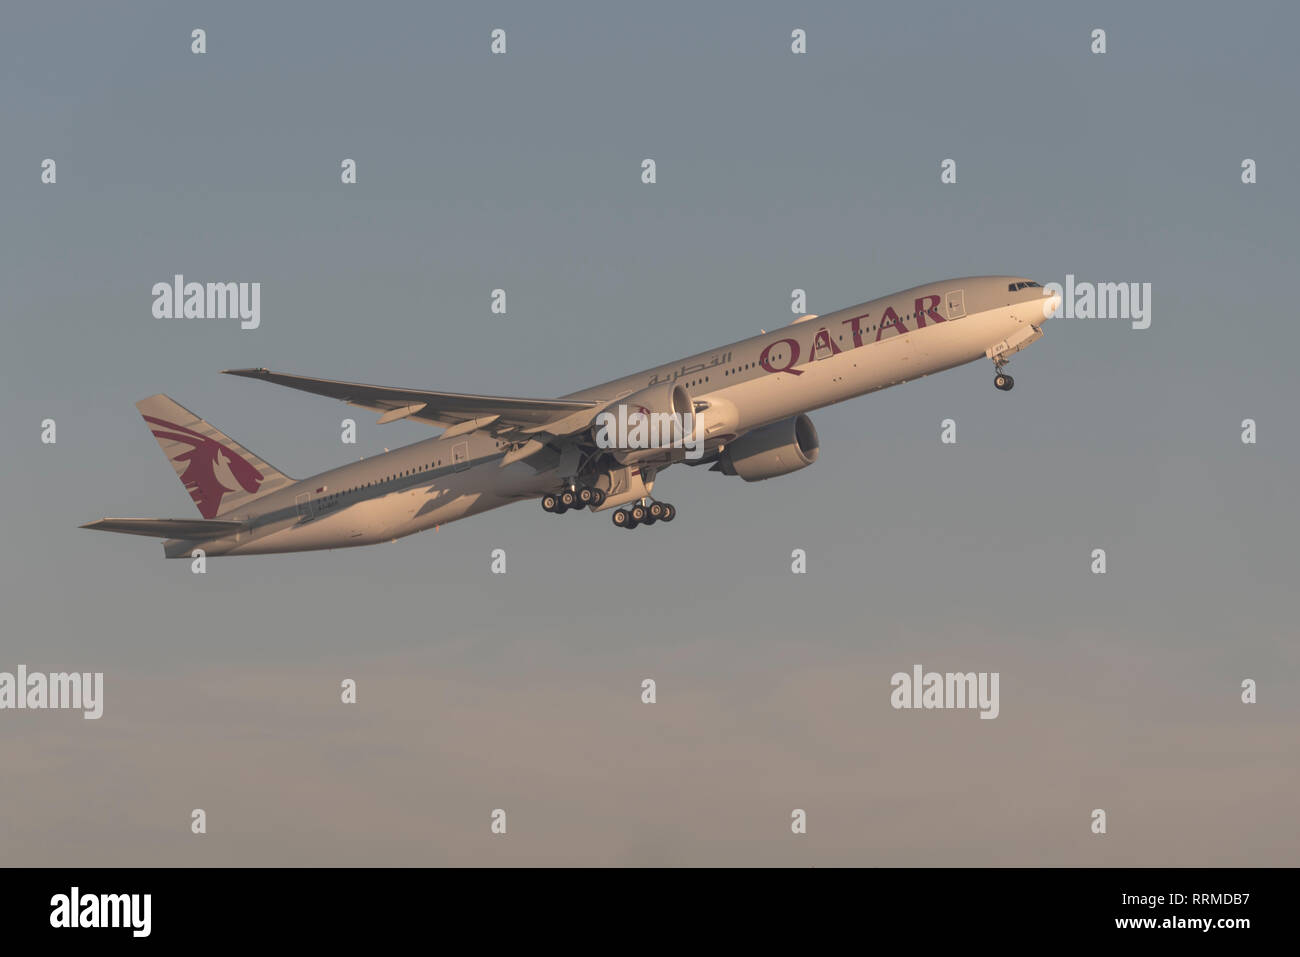 Qatar Airways Boeing 777 aereo jet piano A7-BER decollo dall'Aeroporto Heathrow di Londra, Regno Unito. Compagnia aerea della partenza del volo Foto Stock